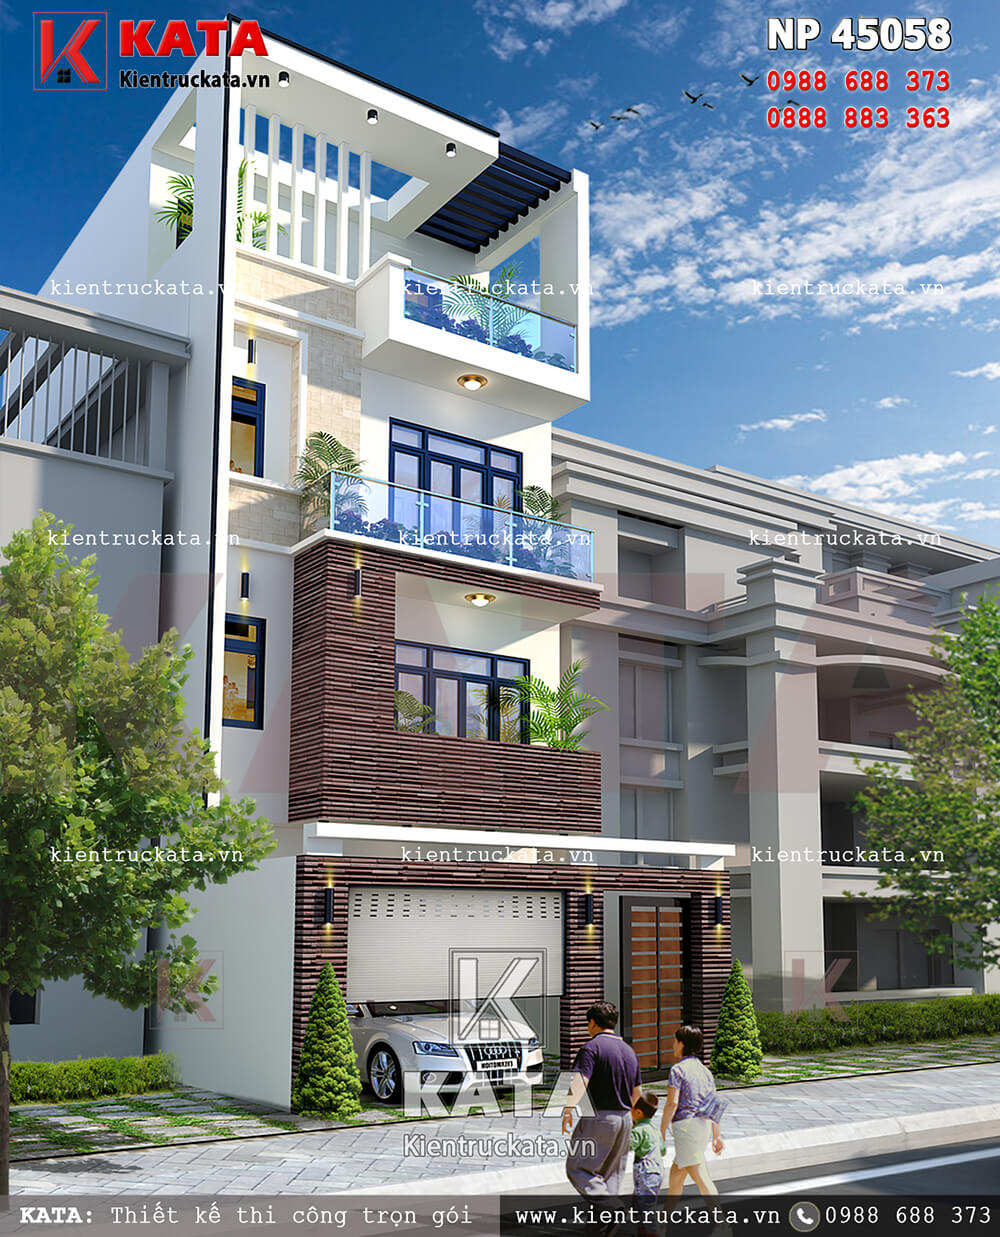 Hình ảnh:Mẫu thiết kế nhà phố 4 tầng đep hiện đại tại Ninh Bình